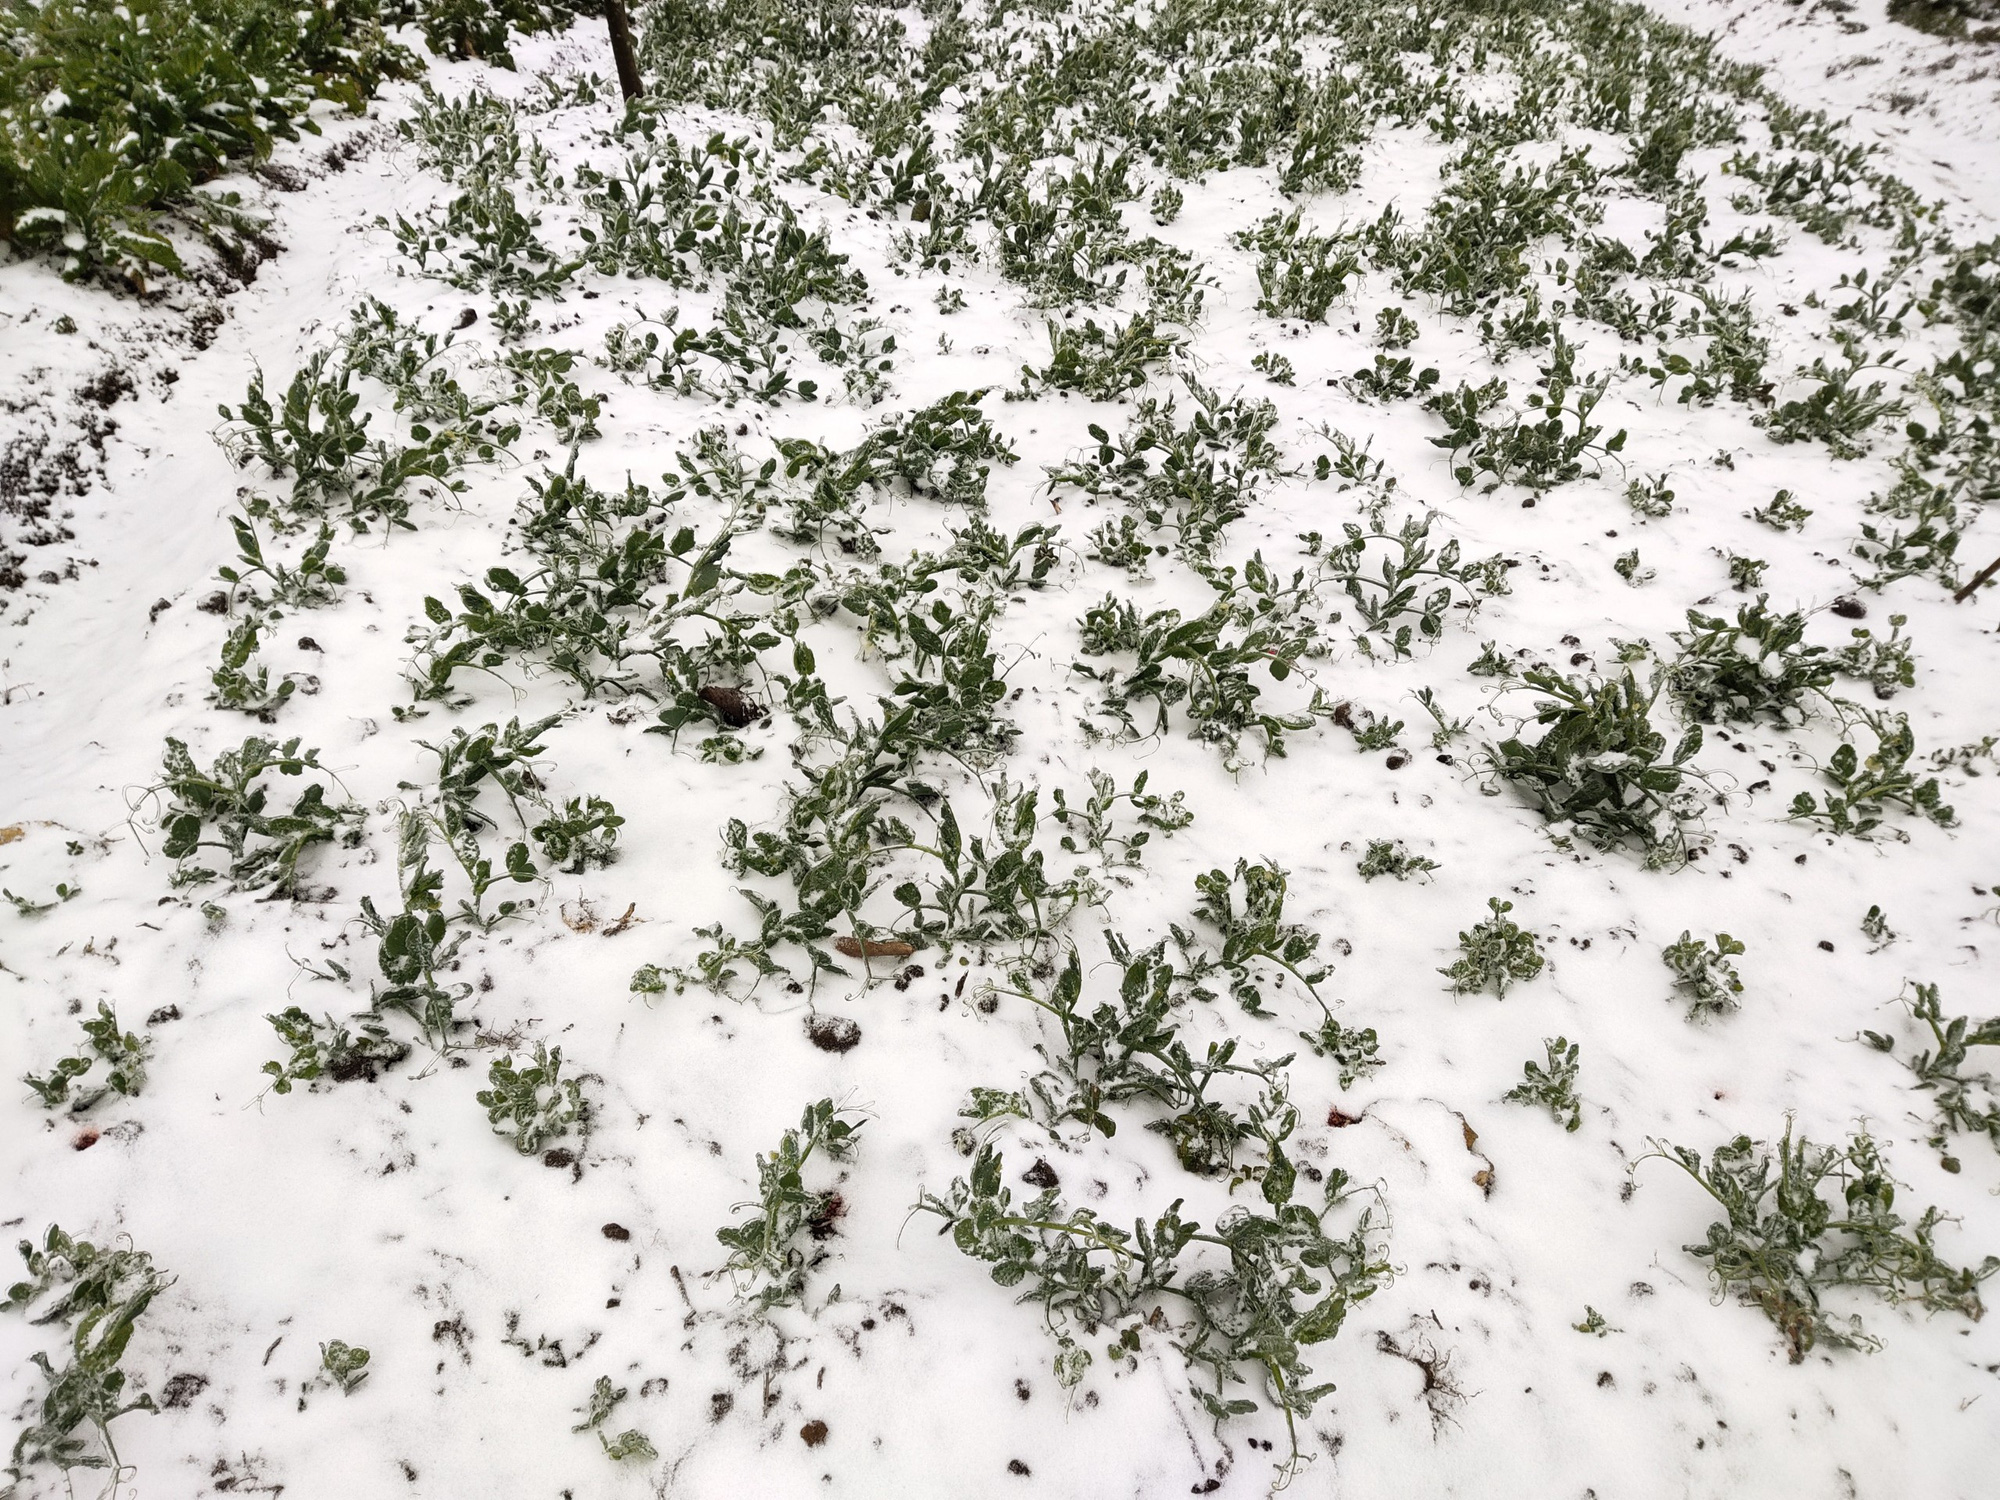 Tuyết rơi dày đặc ở Y Tý, cảnh vật phủ màu trắng xóa như trời Âu - Ảnh 3.